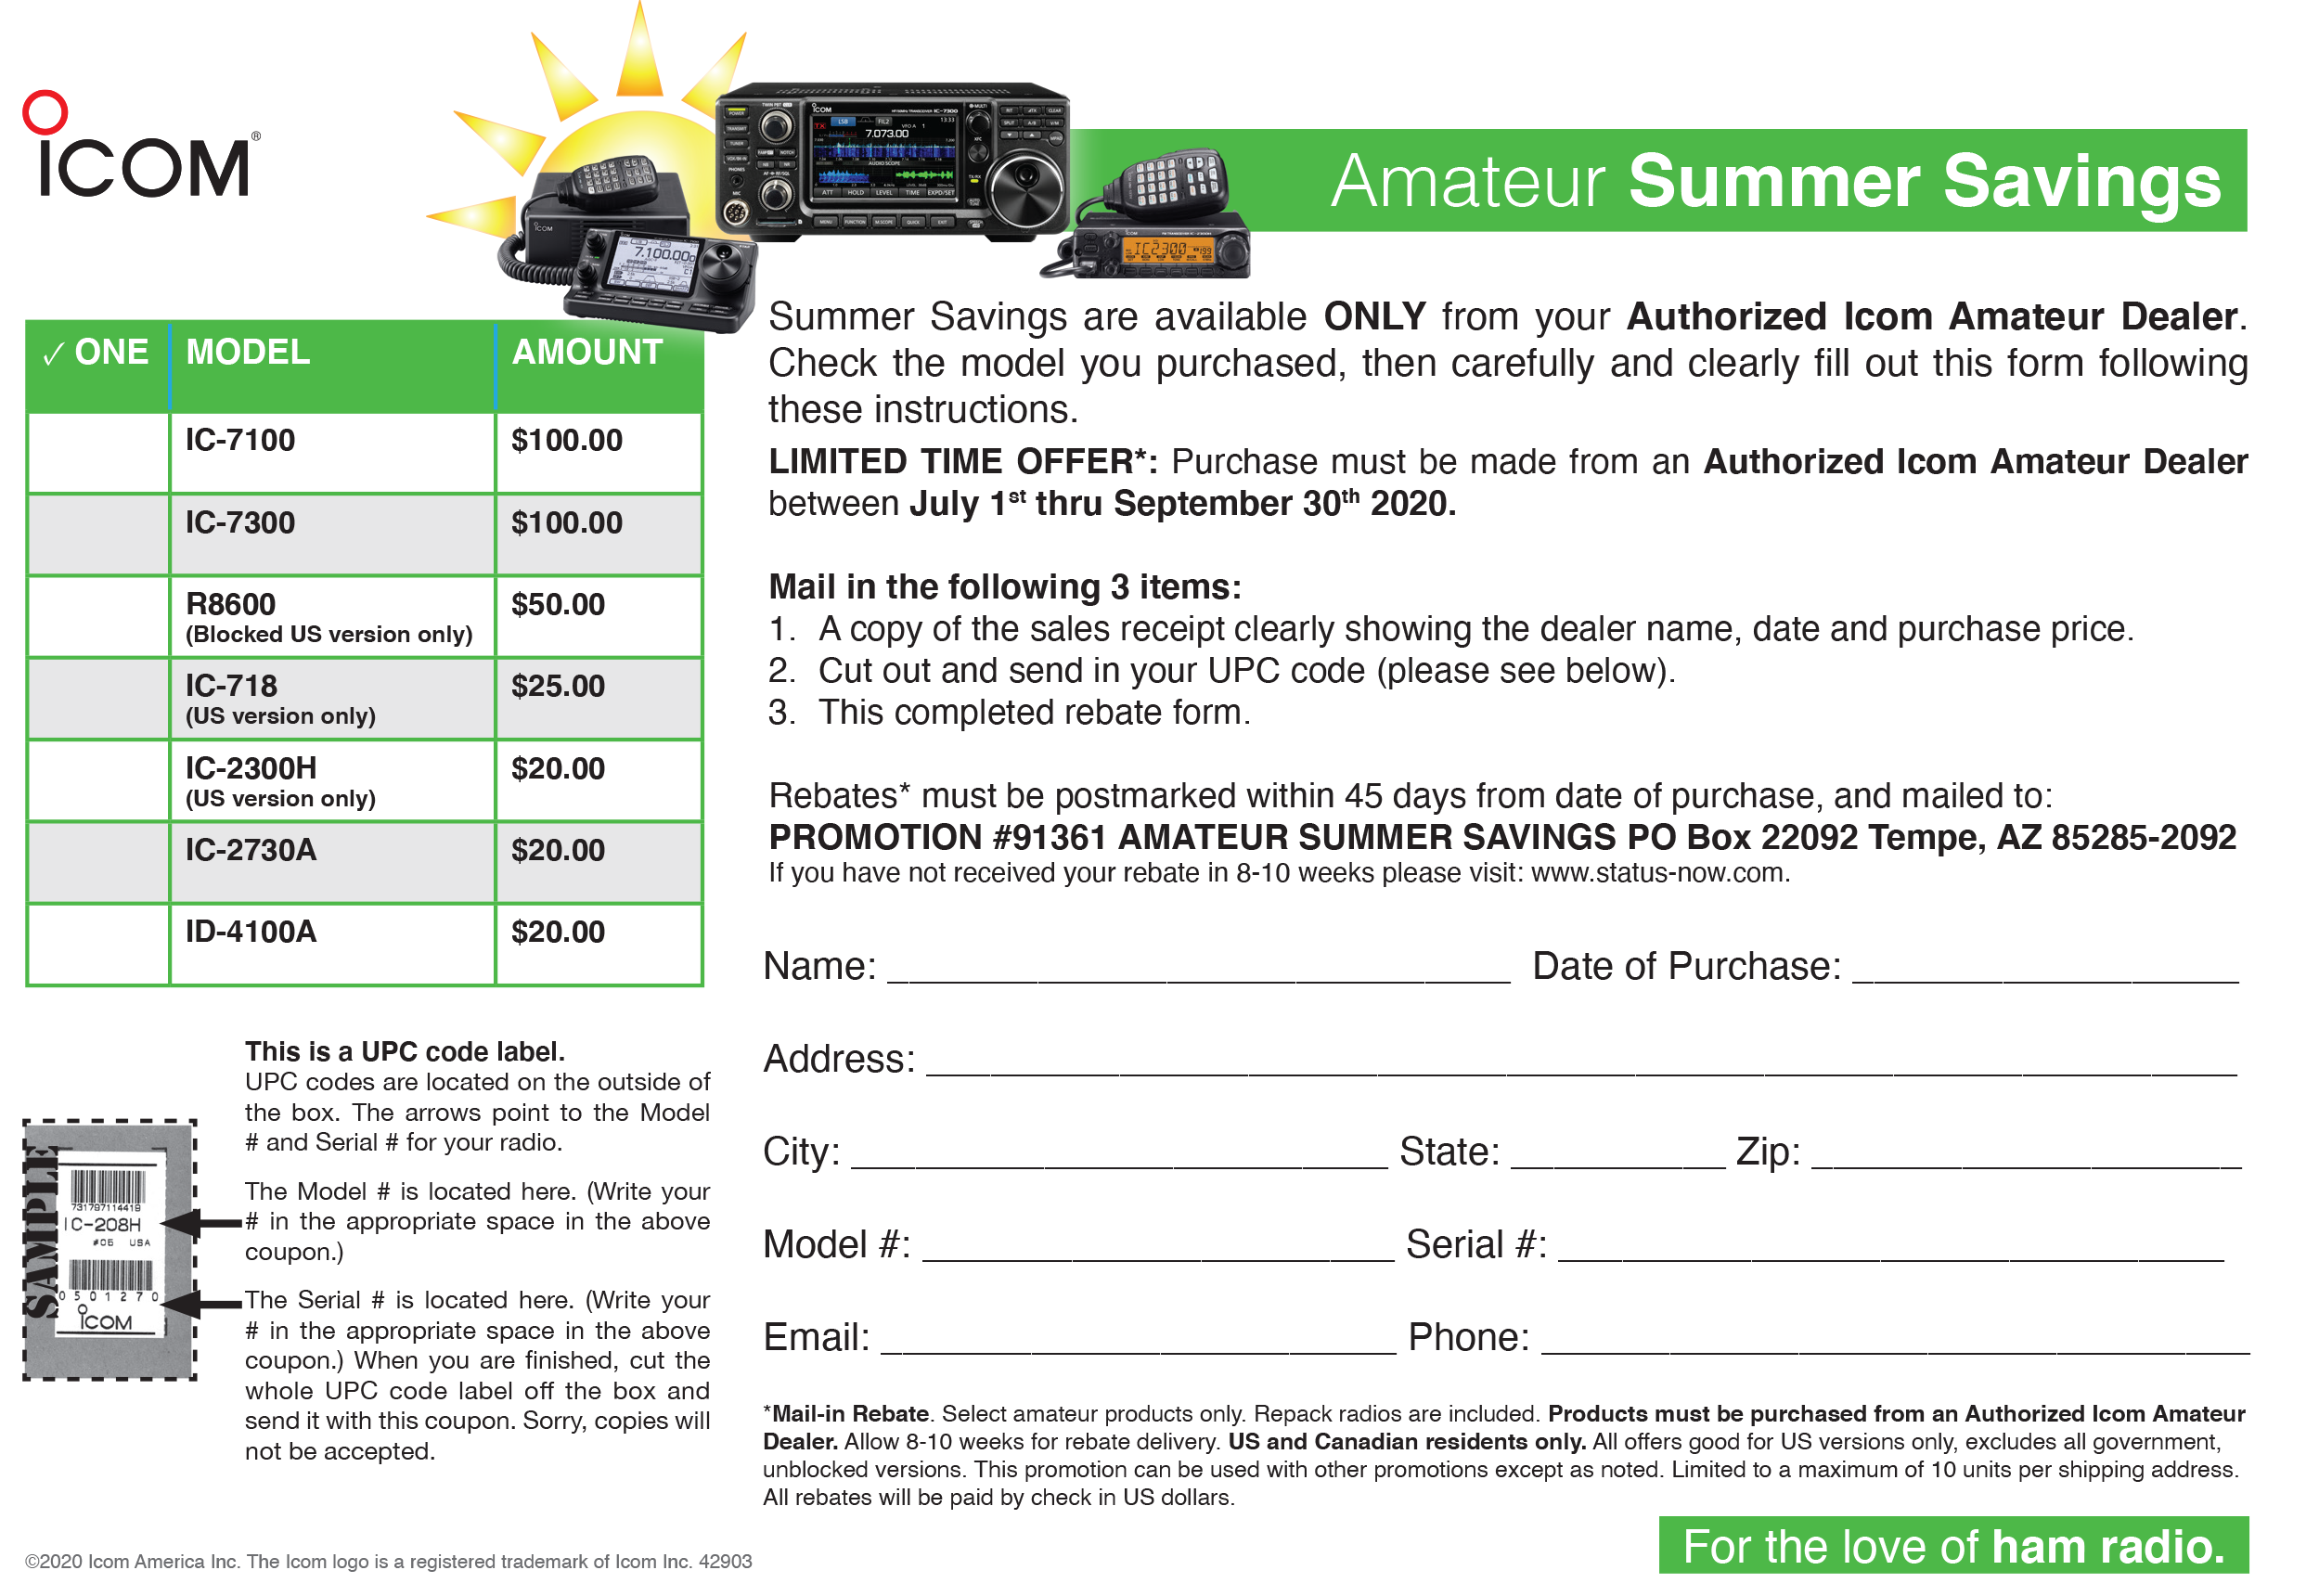 icom-amateur-summer-savings-rebate-2020-radioworld